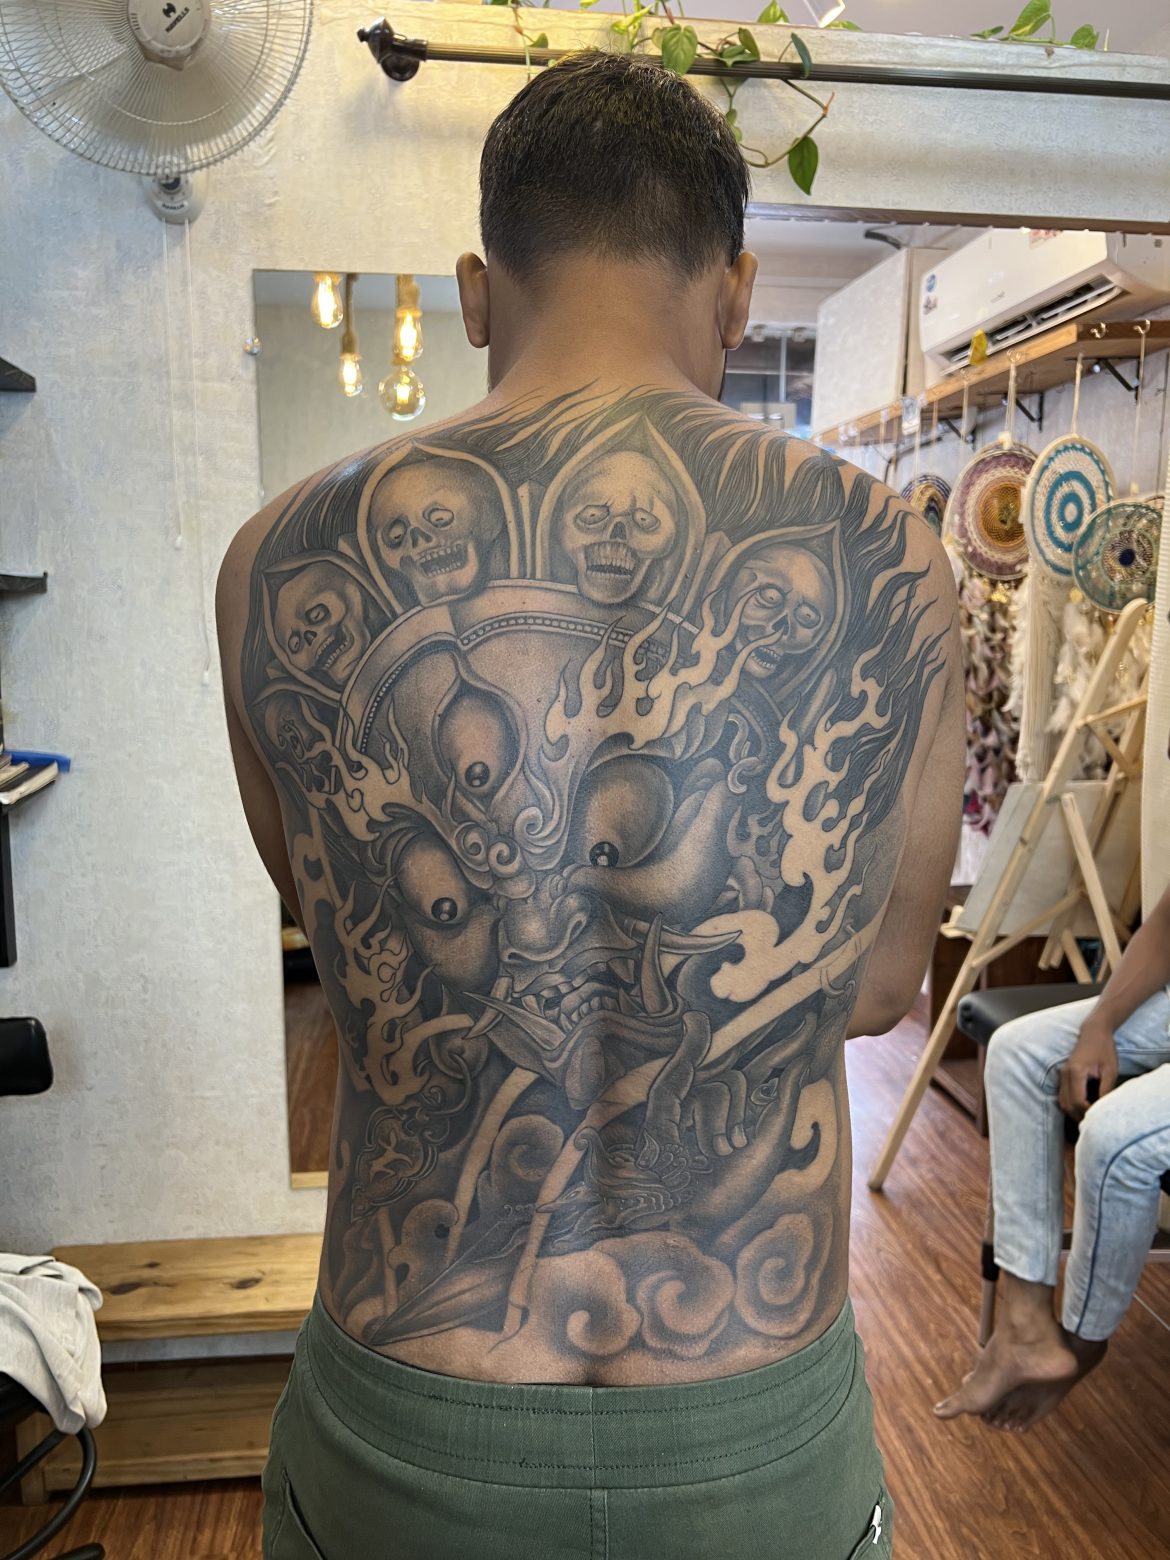 Japanese tattoo New School - The best tattoo artists | Facebook | Japanese  tattoo, Cool tattoos, Tattoo artists